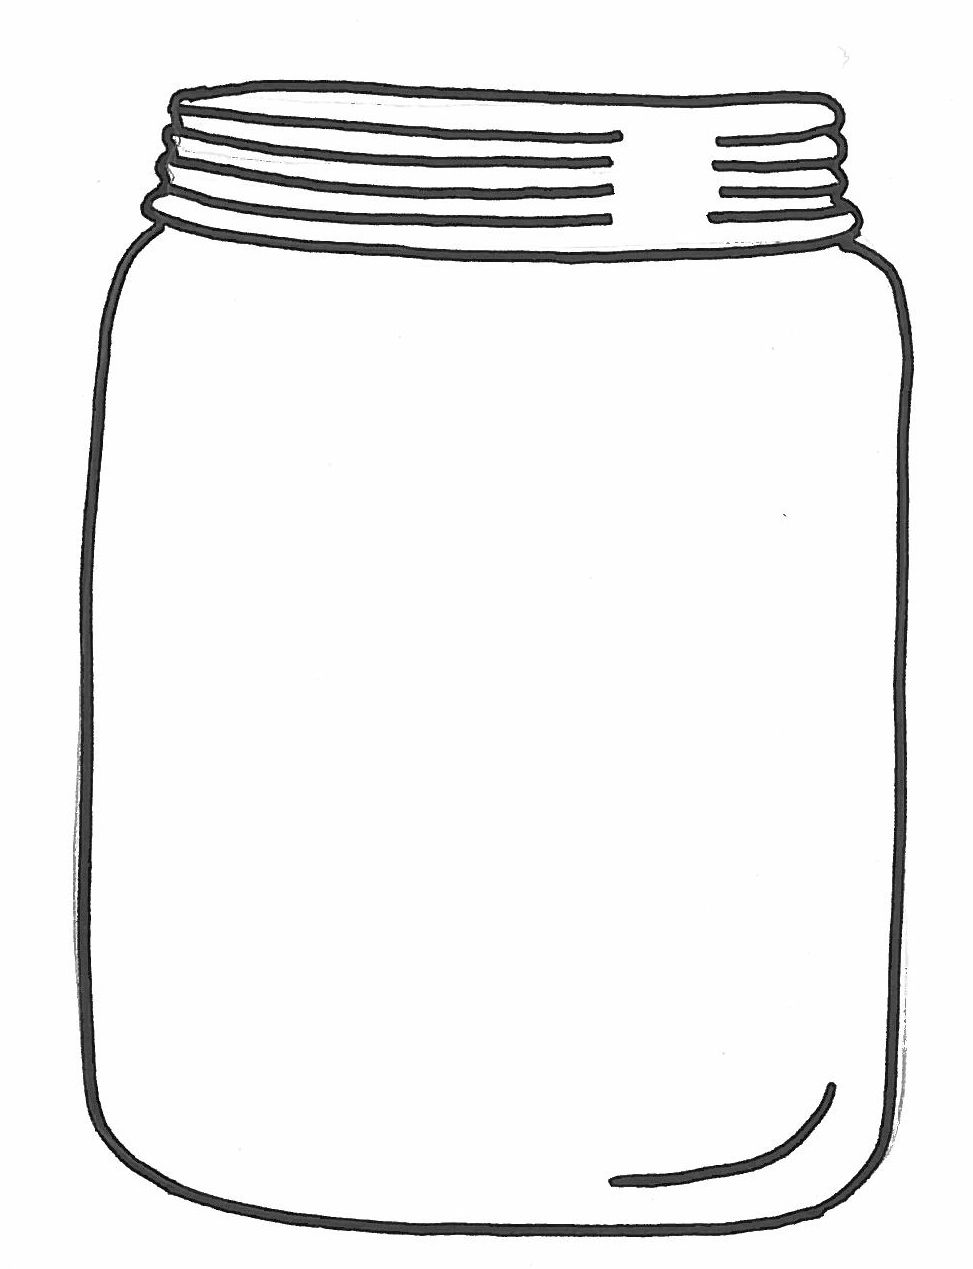 Mason jar items on Pinterest 